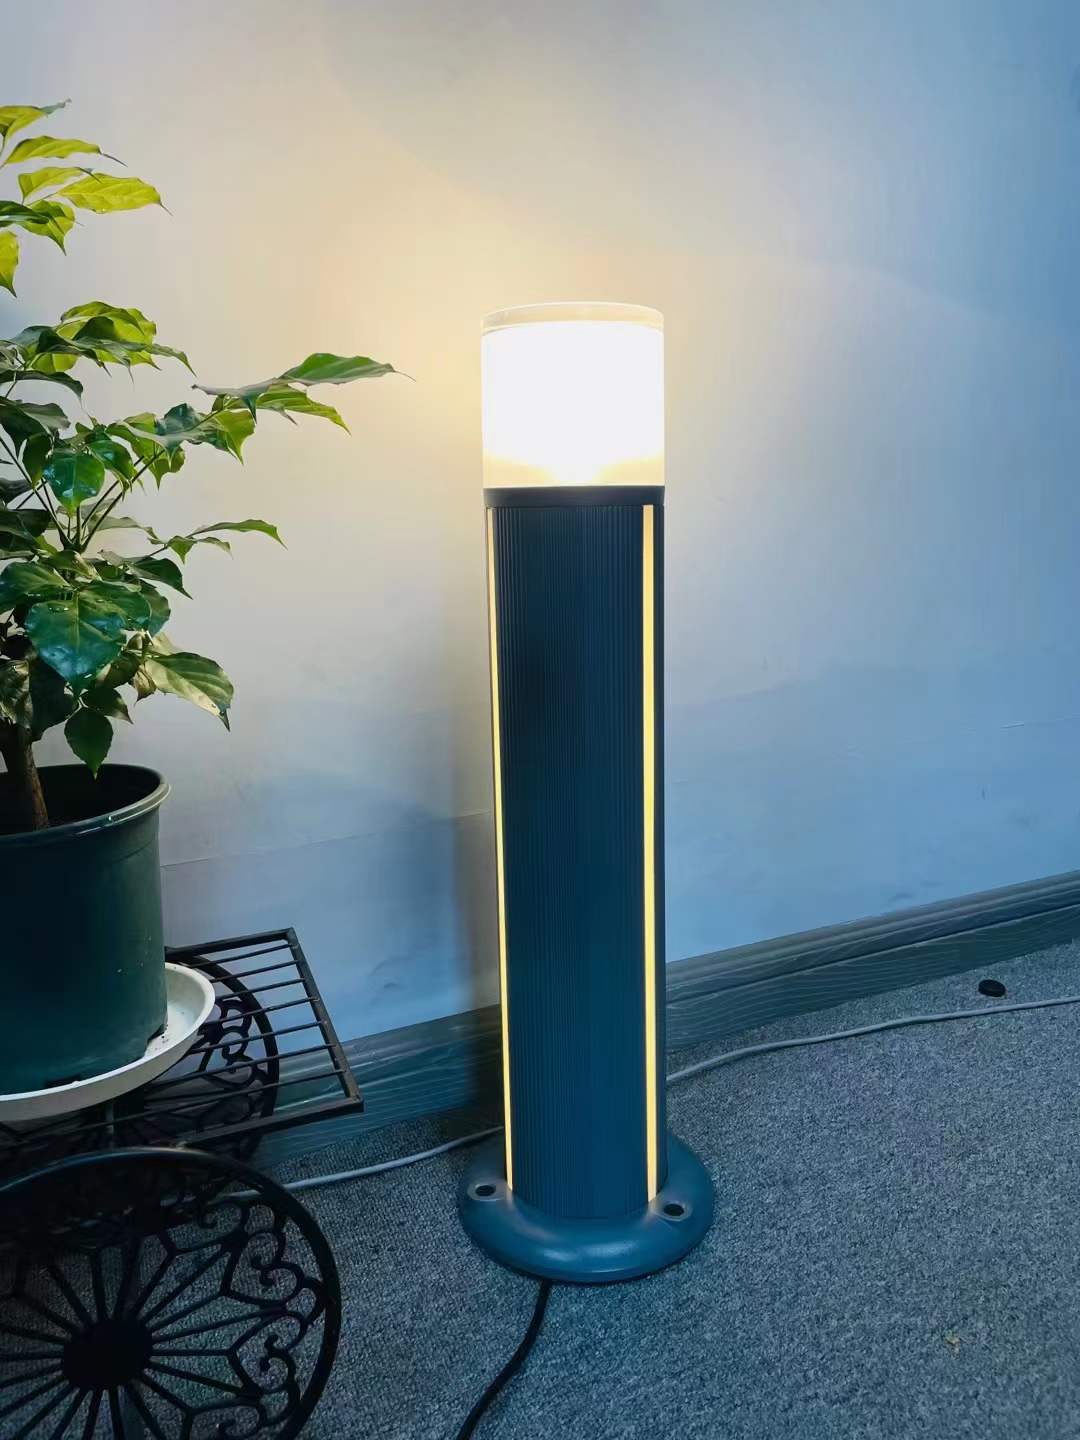 LED column lamp, road lamp, courtyard lamp